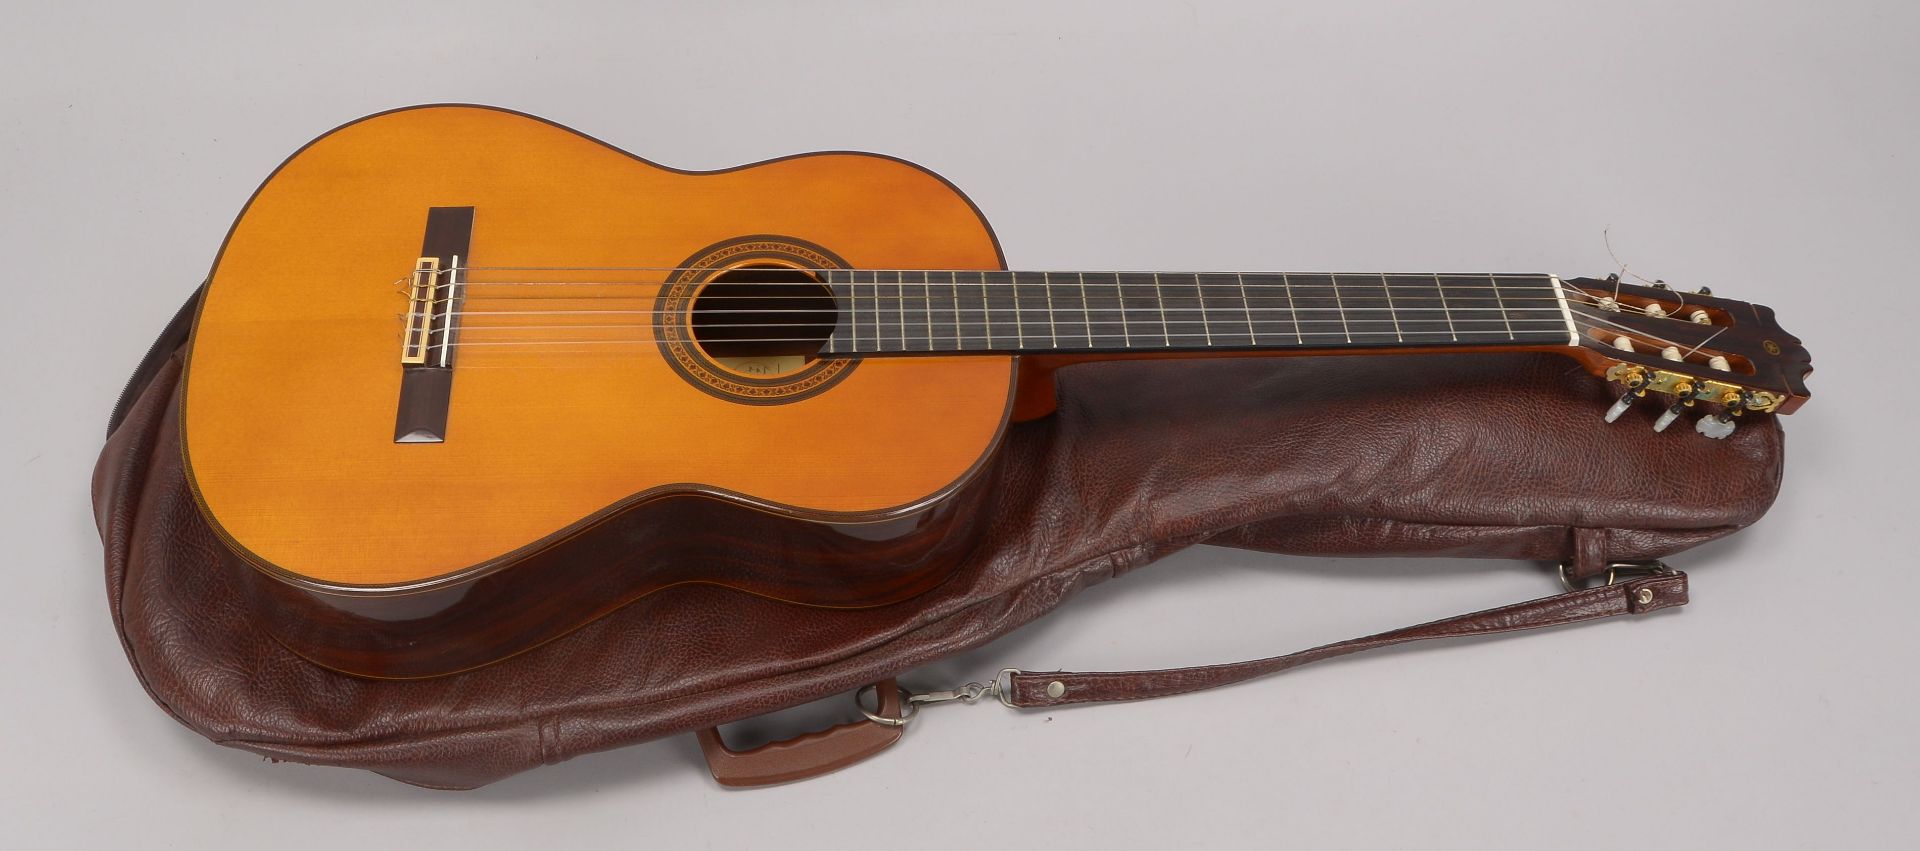 Yamaha Konzertgitarre, G-2455,guter Zustand, in Tasche - Image 2 of 2